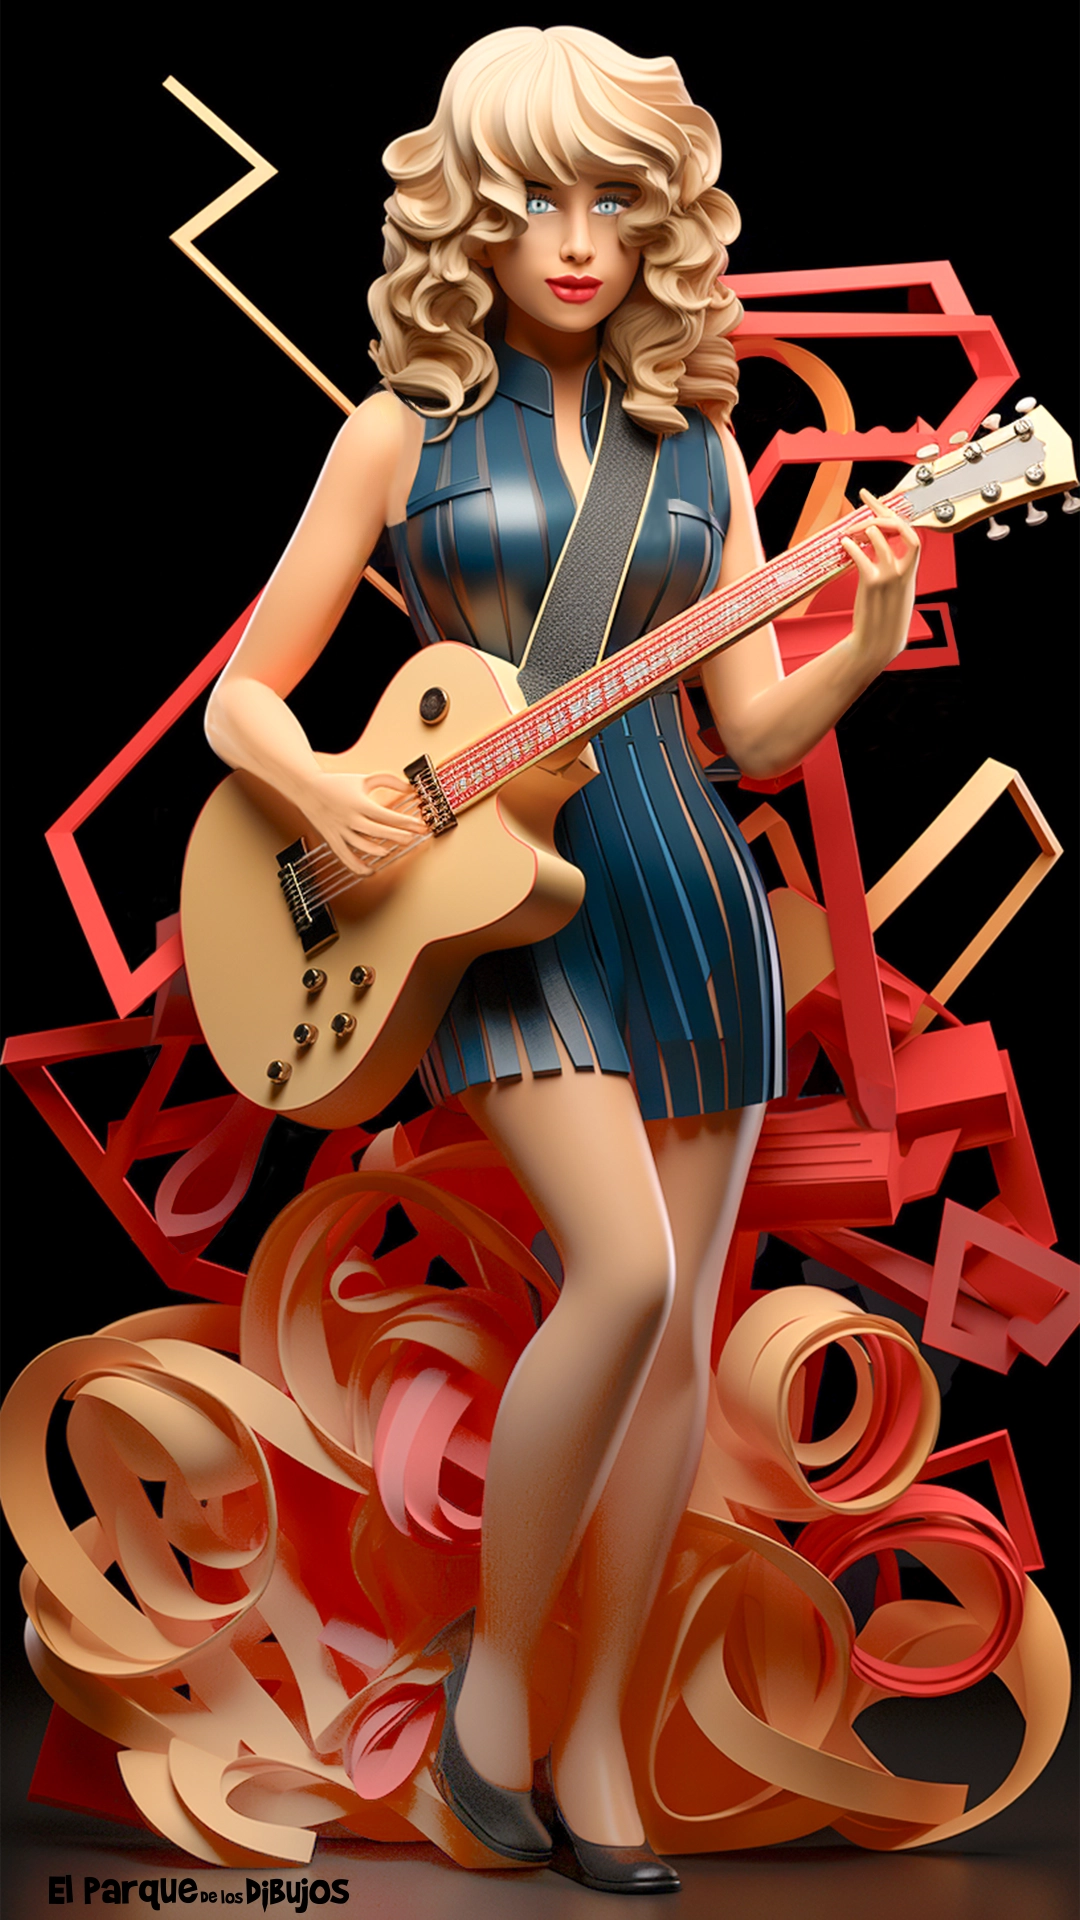 Imagen en color de Taylor Swift con la guitarra en la gira Eras Tour, para descargar e imprimir